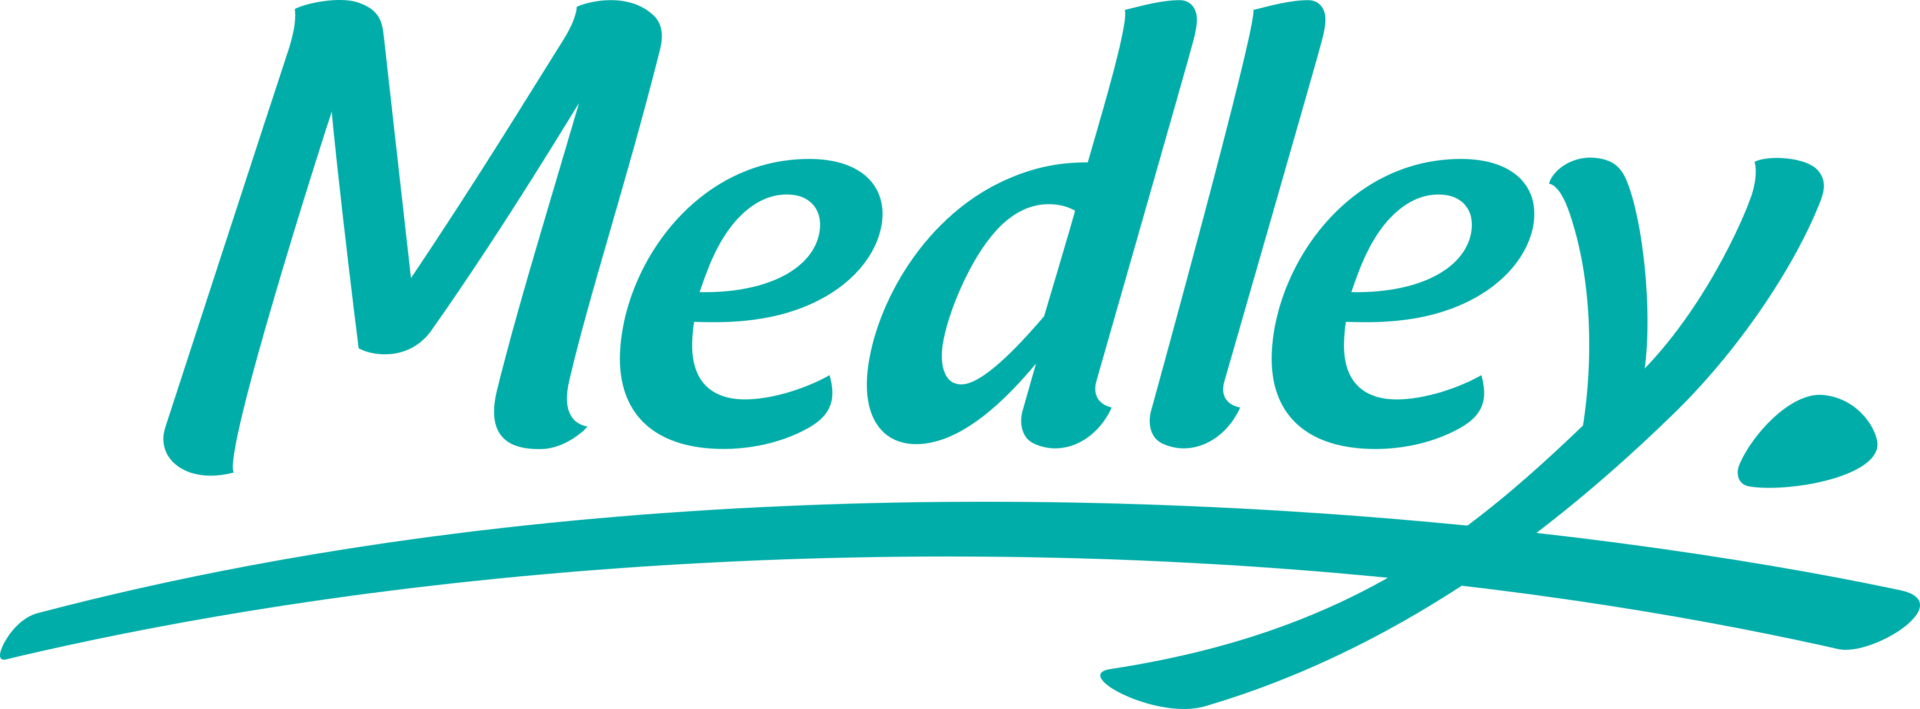 medley-logo